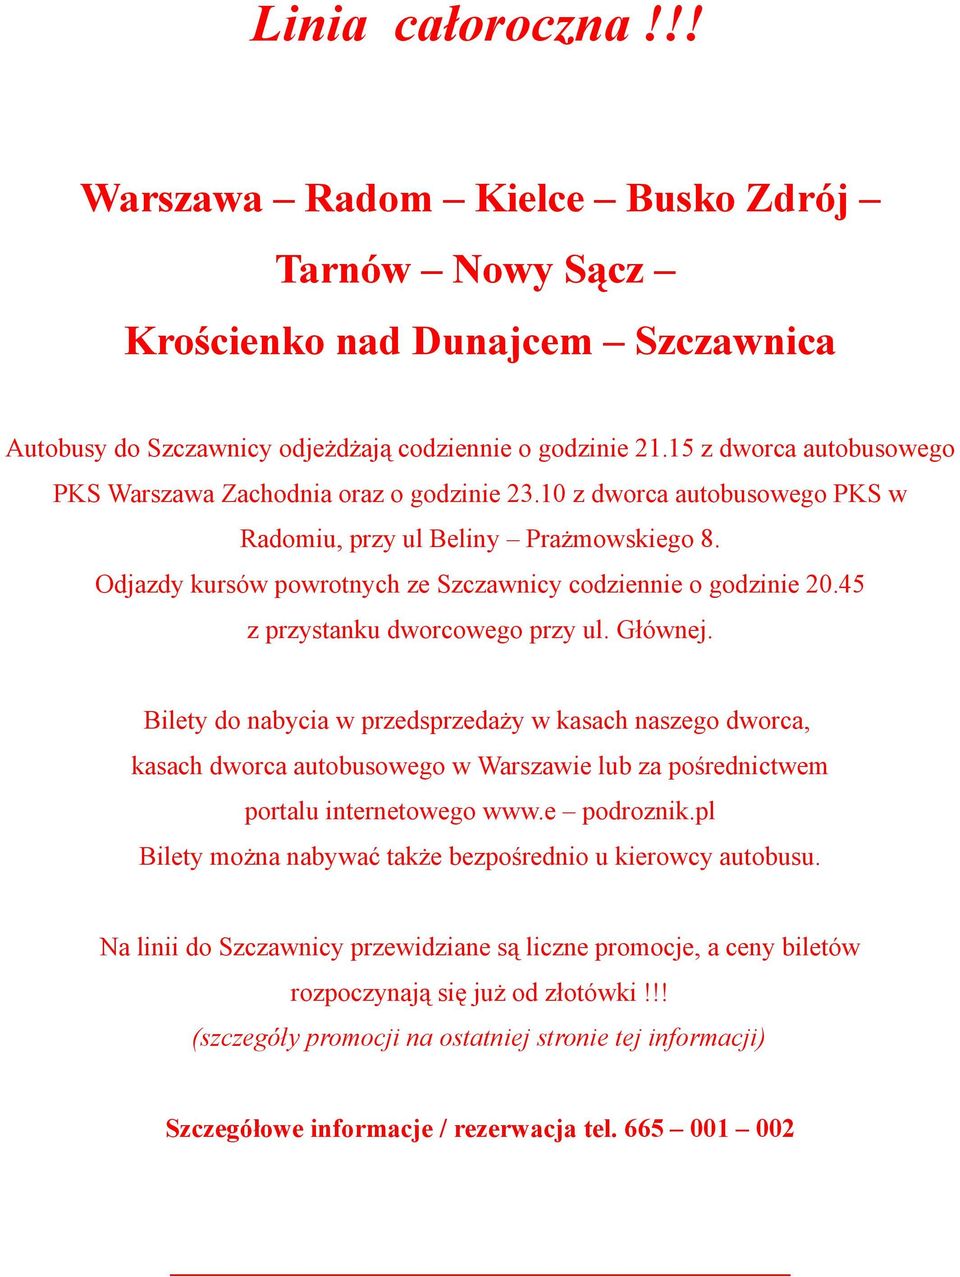 15 z dworca autobusowego PKS Warszawa Zachodnia oraz o godzinie 23.10 z dworca autobusowego PKS w Radomiu, przy ul Beliny Prażmowskiego 8.